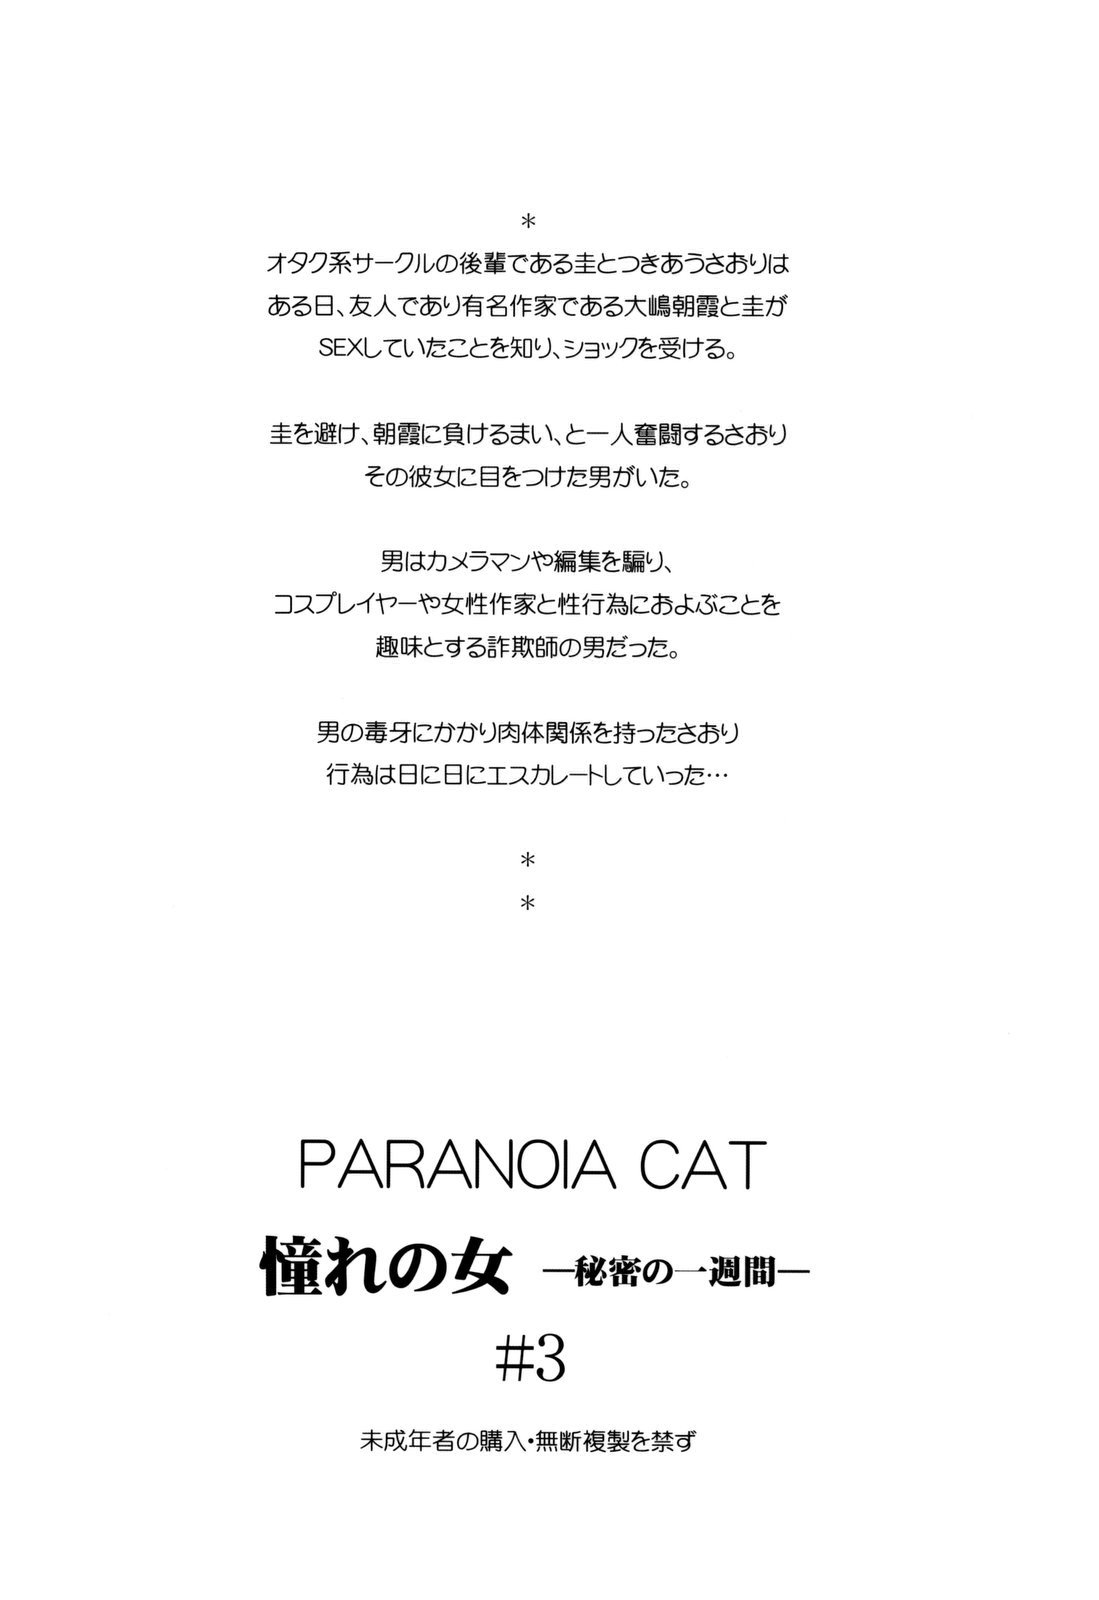 (コミコミ13) [PARANOIA CAT (藤原俊一)] 憧れの女 -秘密の一週間- #3